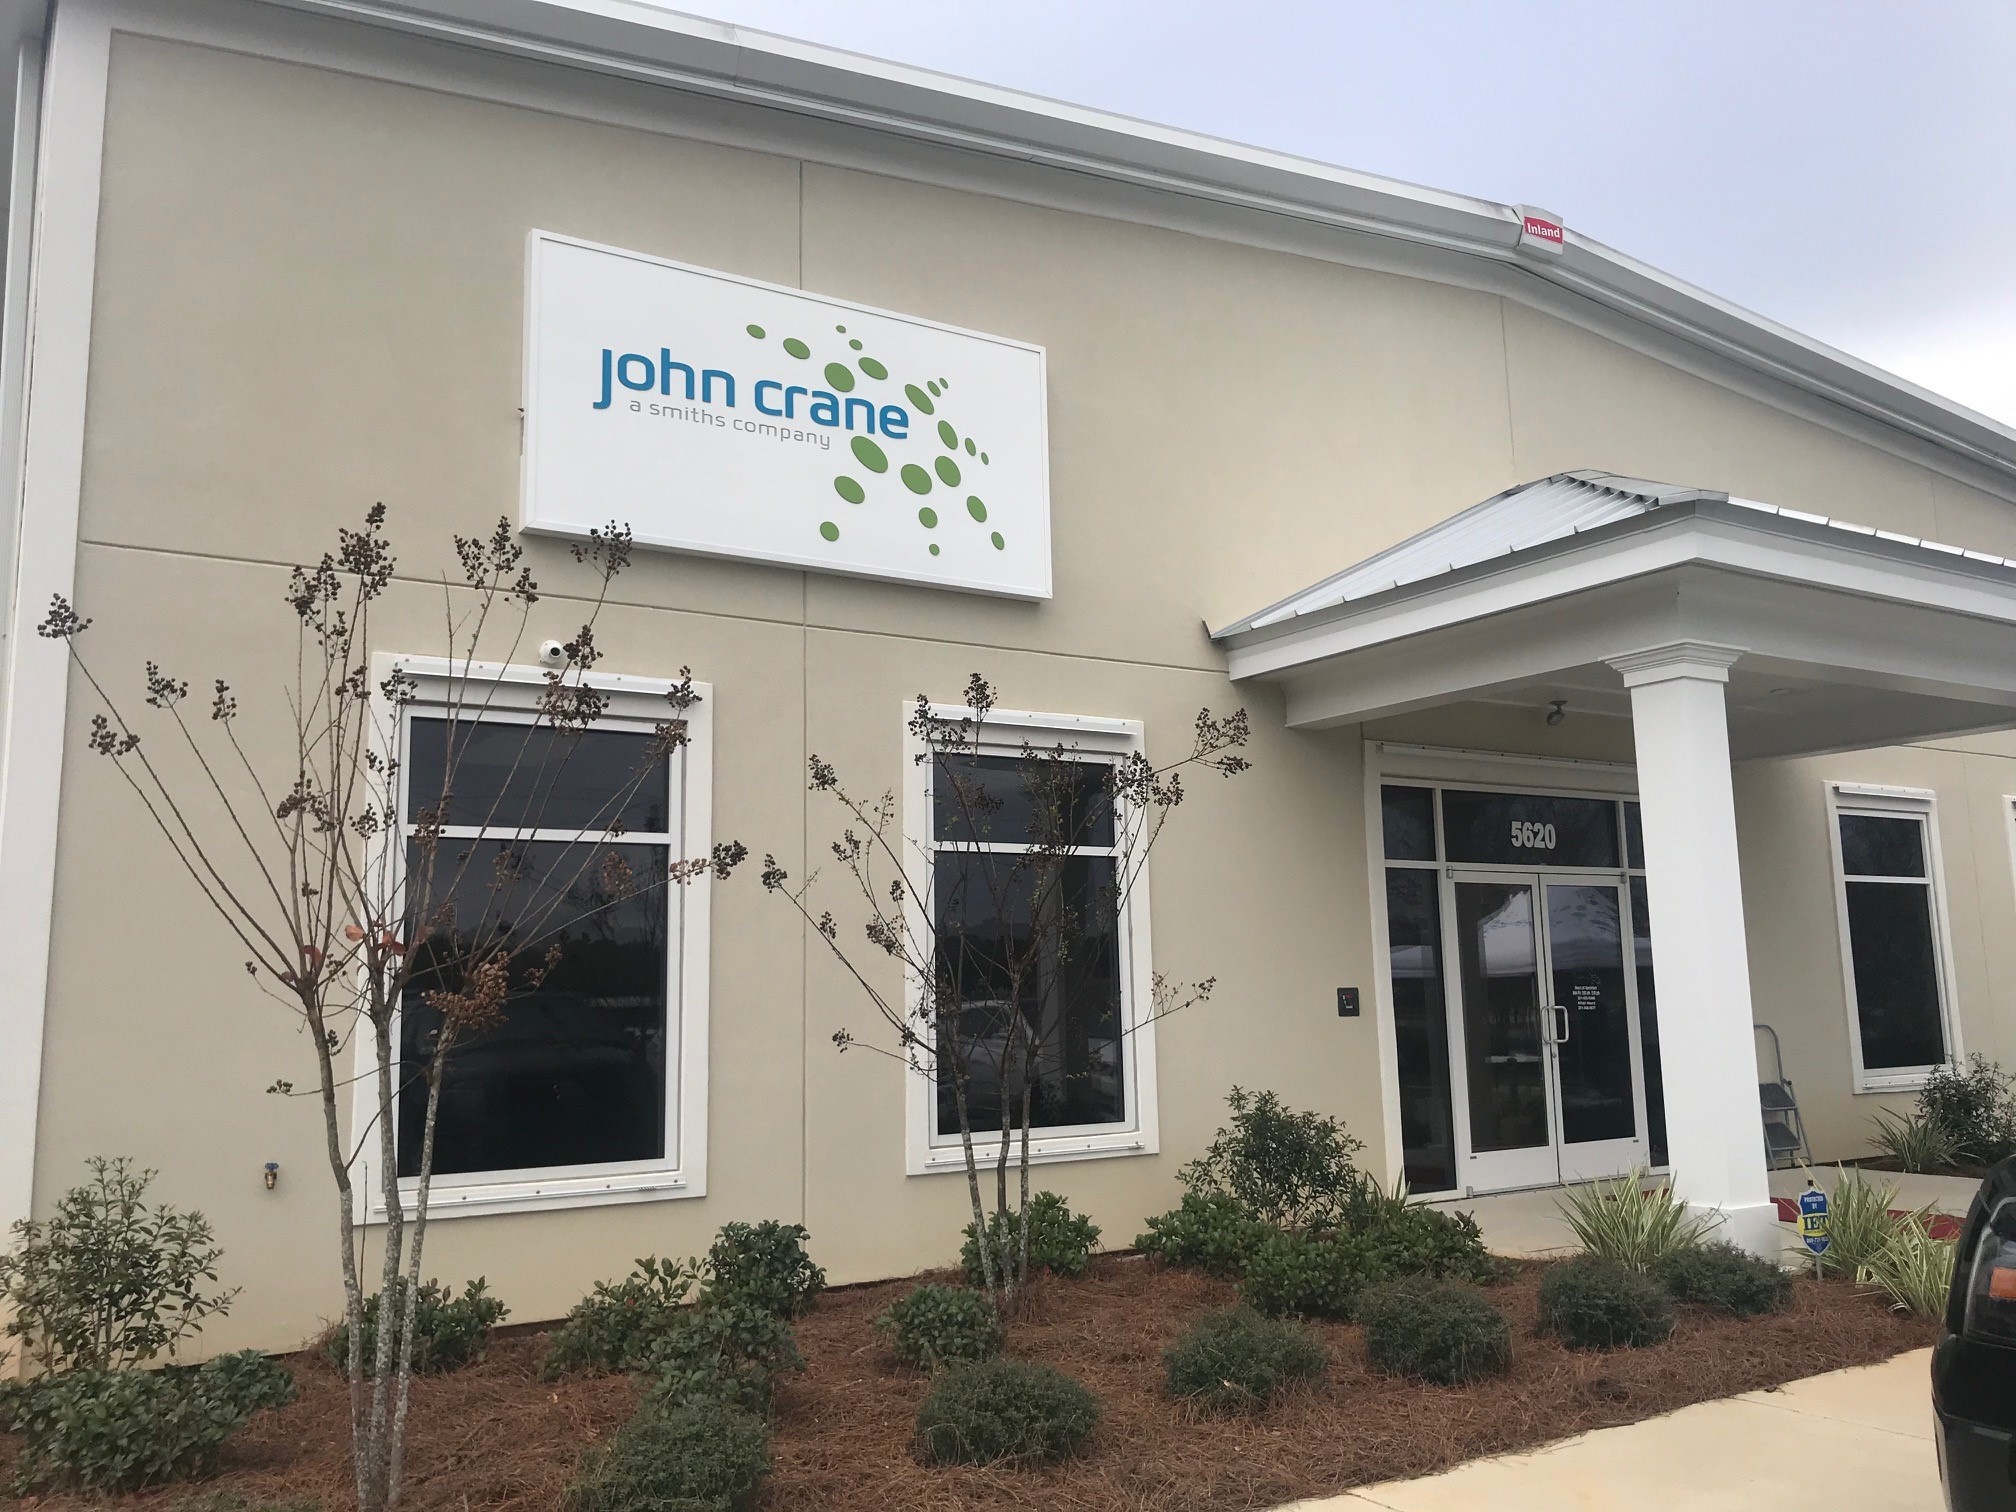 The facade of the new John Crane service centre in Mobile.